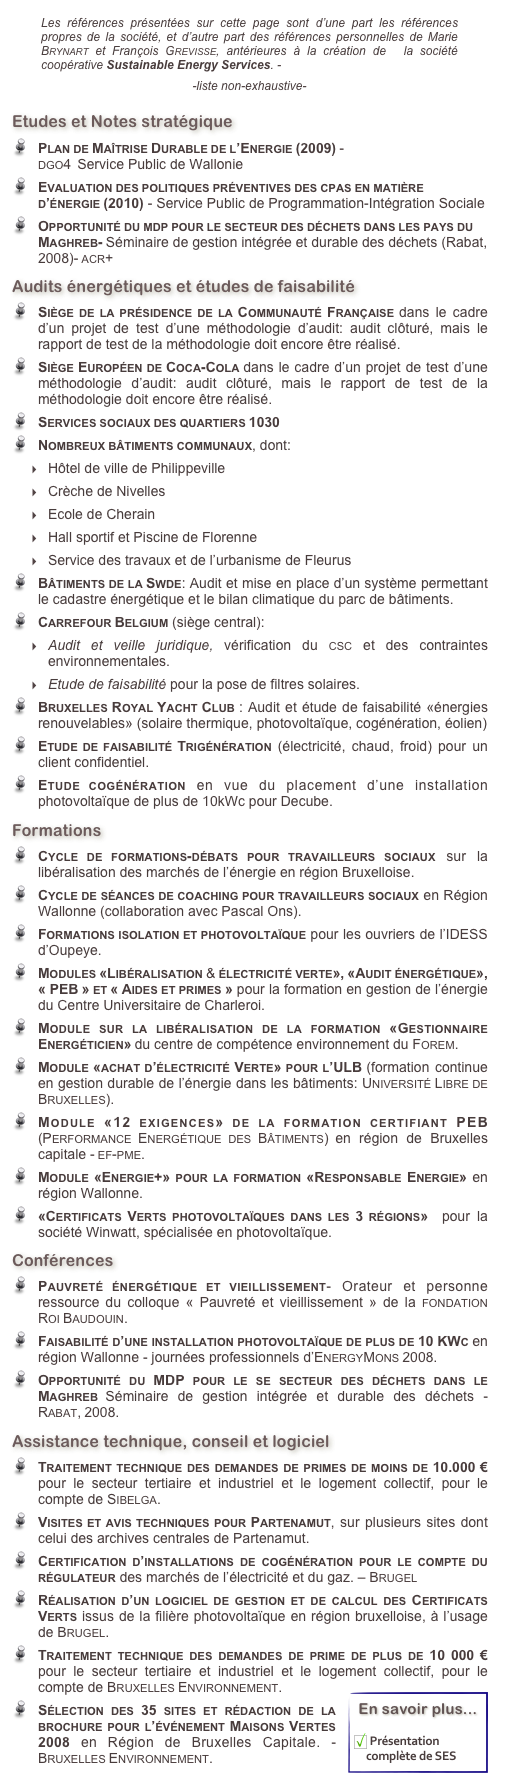 ￼  
Etudes et Notes stratégique
Plan de Maîtrise Durable de l’Energie (2009) -                                                                         dgo4  Service Public de Wallonie
Evaluation des politiques préventives des cpas en matière d’énergie (2010) - Service Public de Programmation-Intégration Sociale
Opportunité du mdp pour le secteur des déchets dans les pays du Maghreb- Séminaire de gestion intégrée et durable des déchets (Rabat, 2008)- acr+
Audits énergétiques et études de faisabilité
Siège de la présidence de la Communauté Française dans le cadre d’un projet de test d’une méthodologie d’audit: audit clôturé, mais le rapport de test de la méthodologie doit encore être réalisé.
Siège Européen de Coca-Cola dans le cadre d’un projet de test d’une méthodologie d’audit: audit clôturé, mais le rapport de test de la méthodologie doit encore être réalisé.
Services sociaux des quartiers 1030
Nombreux bâtiments communaux, dont: 
Hôtel de ville de Philippeville
Crèche de Nivelles
Ecole de Cherain
Hall sportif et Piscine de Florenne
Service des travaux et de l’urbanisme de Fleurus
Bâtiments de la Swde: Audit et mise en place d’un système permettant le cadastre énergétique et le bilan climatique du parc de bâtiments. 
Carrefour Belgium (siège central):  
Audit et veille juridique, vérification du csc et des contraintes environnementales. 
Etude de faisabilité pour la pose de filtres solaires.
Bruxelles Royal Yacht Club : Audit et étude de faisabilité «énergies renouvelables» (solaire thermique, photovoltaïque, cogénération, éolien)
Etude de faisabilité Trigénération (électricité, chaud, froid) pour un client confidentiel.
Etude cogénération en vue du placement d’une installation photovoltaïque de plus de 10kWc pour Decube.
Formations
Cycle de formations-débats pour travailleurs sociaux sur la libéralisation des marchés de l’énergie en région Bruxelloise.
Cycle de séances de coaching pour travailleurs sociaux en Région Wallonne (collaboration avec Pascal Ons). 
Formations isolation et photovoltaïque pour les ouvriers de l’IDESS d’Oupeye.
Modules «Libéralisation & électricité verte», «Audit énergétique», « PEB » et « Aides et primes » pour la formation en gestion de l’énergie du Centre Universitaire de Charleroi.
Module sur la libéralisation de la formation «Gestionnaire Energéticien» du centre de compétence environnement du Forem.
Module «achat d’électricité Verte» pour l’ULB (formation continue en gestion durable de l’énergie dans les bâtiments: Université Libre de Bruxelles).
Module «12 exigences» de la formation certifiant PEB (Performance Energétique des Bâtiments) en région de Bruxelles capitale - ef-pme.
Module «Energie+» pour la formation «Responsable Energie» en région Wallonne.
«Certificats Verts photovoltaïques dans les 3 régions»  pour la société Winwatt, spécialisée en photovoltaïque.
Conférences
Pauvreté énergétique et vieillissement- Orateur et personne ressource du colloque « Pauvreté et vieillissement » de la fondation Roi Baudouin.
Faisabilité d’une installation photovoltaïque de plus de 10 KWc en région Wallonne - journées professionnels d’EnergyMons 2008.
Opportunité du MDP pour le se secteur des déchets dans le Maghreb Séminaire de gestion intégrée et durable des déchets - Rabat, 2008.
Assistance technique, conseil et logiciel
Traitement technique des demandes de primes de moins de 10.000 € pour le secteur tertiaire et industriel et le logement collectif, pour le compte de Sibelga. 
Visites et avis techniques pour Partenamut, sur plusieurs sites dont celui des archives centrales de Partenamut.
Certification d’installations de cogénération pour le compte du régulateur des marchés de l’électricité et du gaz. – Brugel
Réalisation d’un logiciel de gestion et de calcul des Certificats Verts issus de la filière photovoltaïque en région bruxelloise, à l’usage de Brugel.
Traitement technique des demandes de prime de plus de 10 000 € pour le secteur tertiaire et industriel et le logement collectif, pour le compte de Bruxelles Environnement. ￼
Sélection des 35 sites et rédaction de la brochure pour l’événement Maisons Vertes 2008 en Région de Bruxelles Capitale. - Bruxelles Environnement.